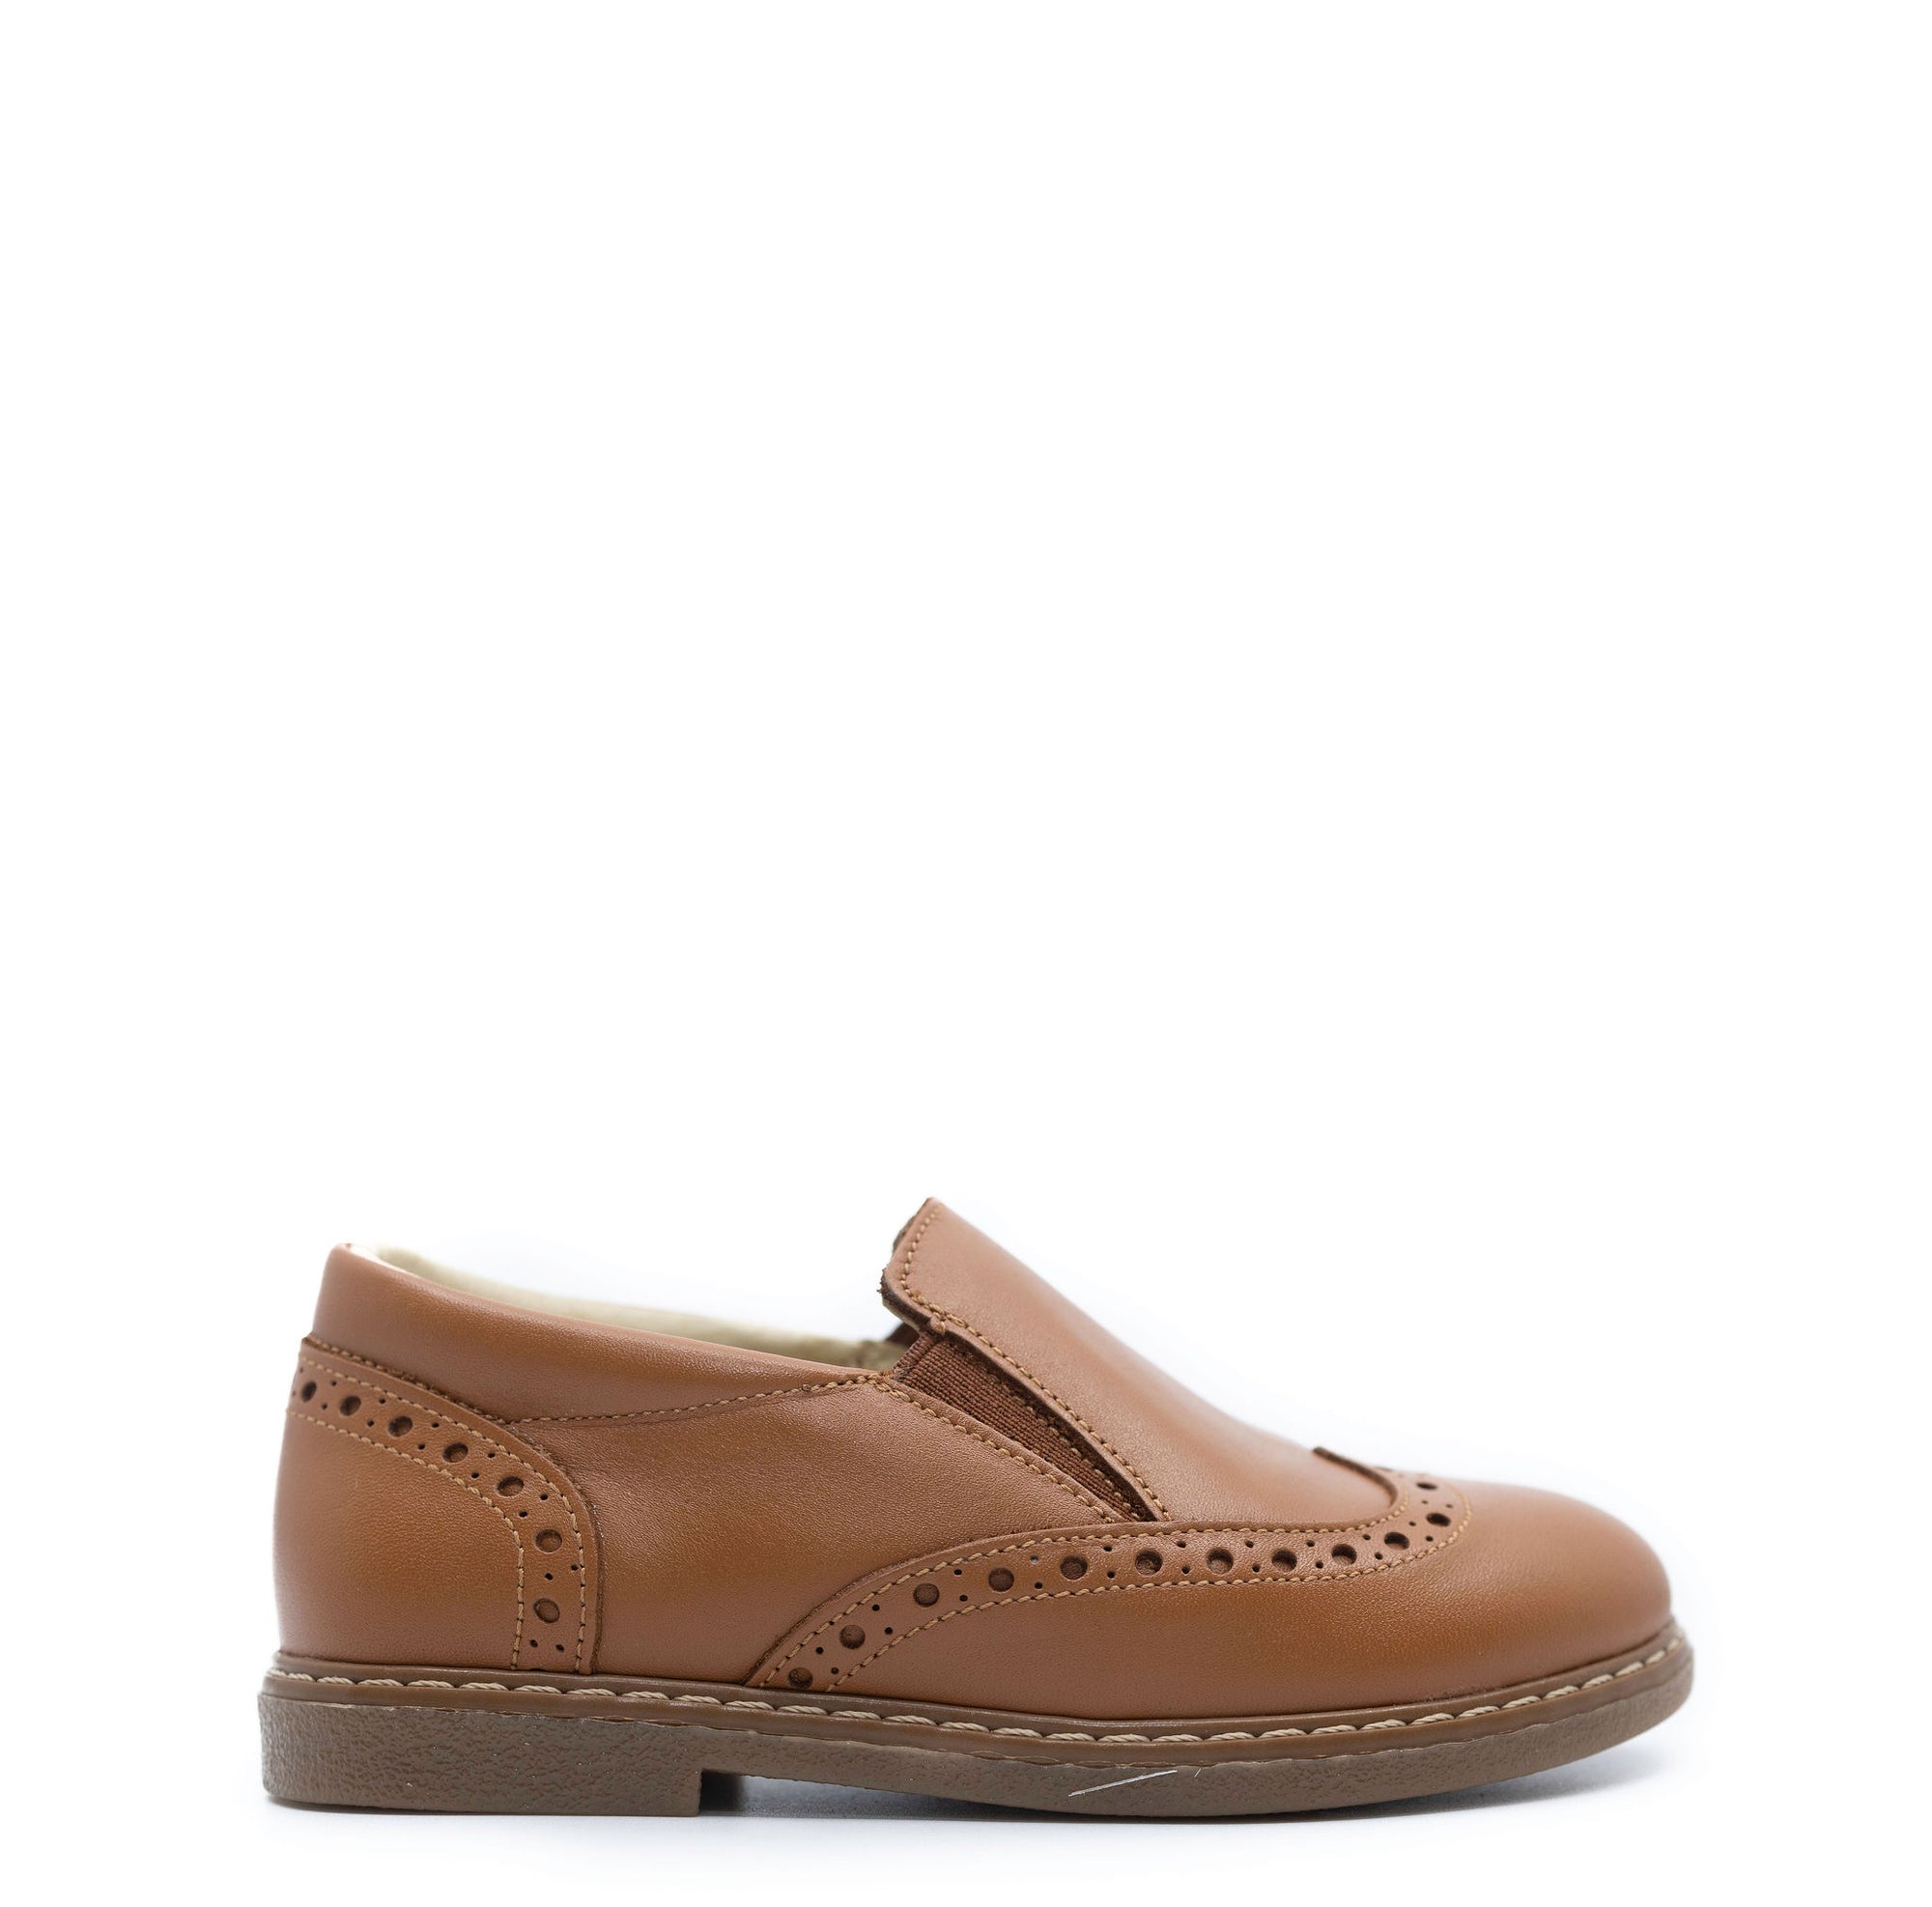 Blublonc Cuero Wingtip Slip On Loafer-Tassel Children Shoes